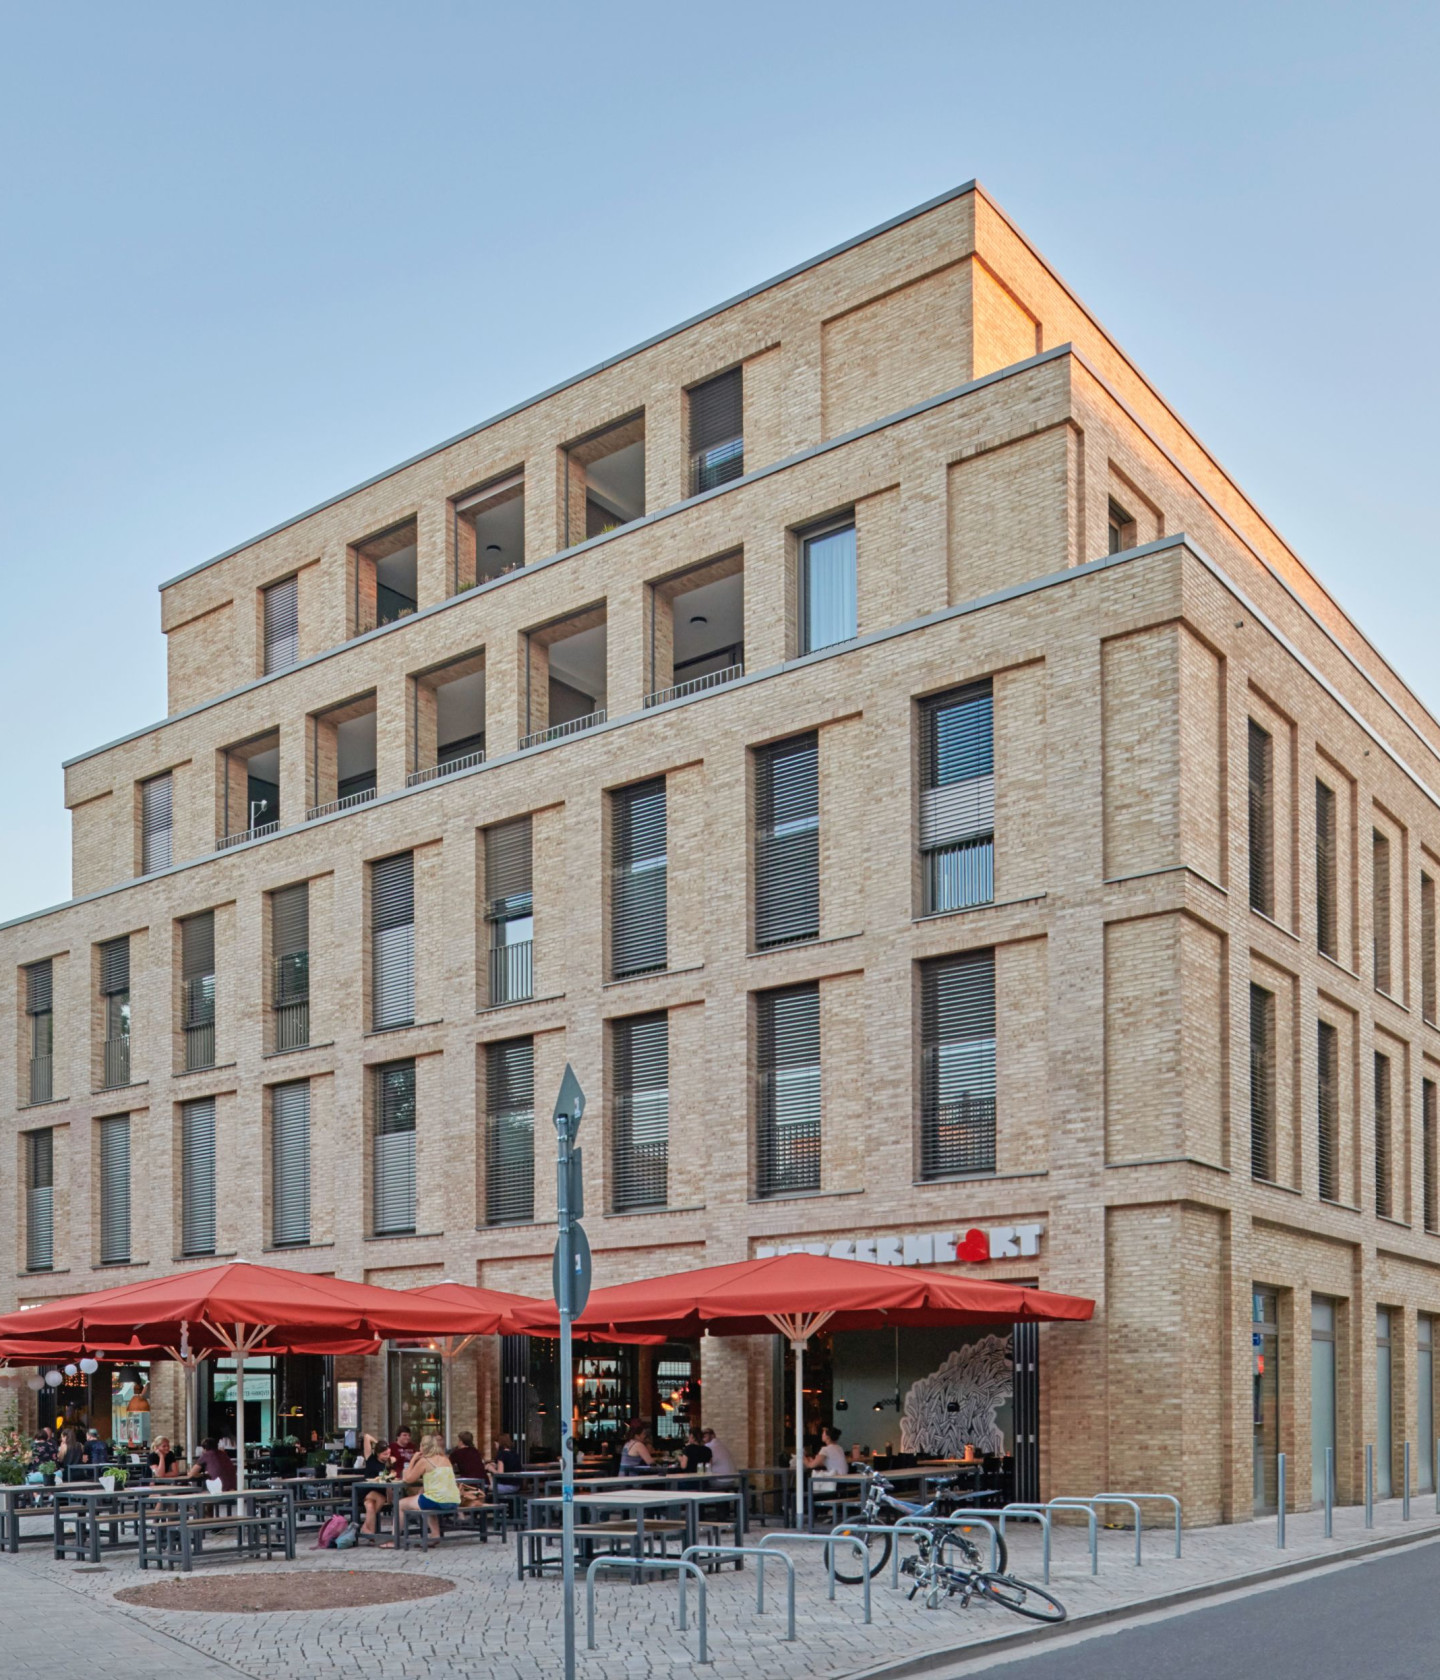 Bild: Das Gebäude MARQ auf dem Marstallplatz in Hannover mit Außen-Gastronomie.